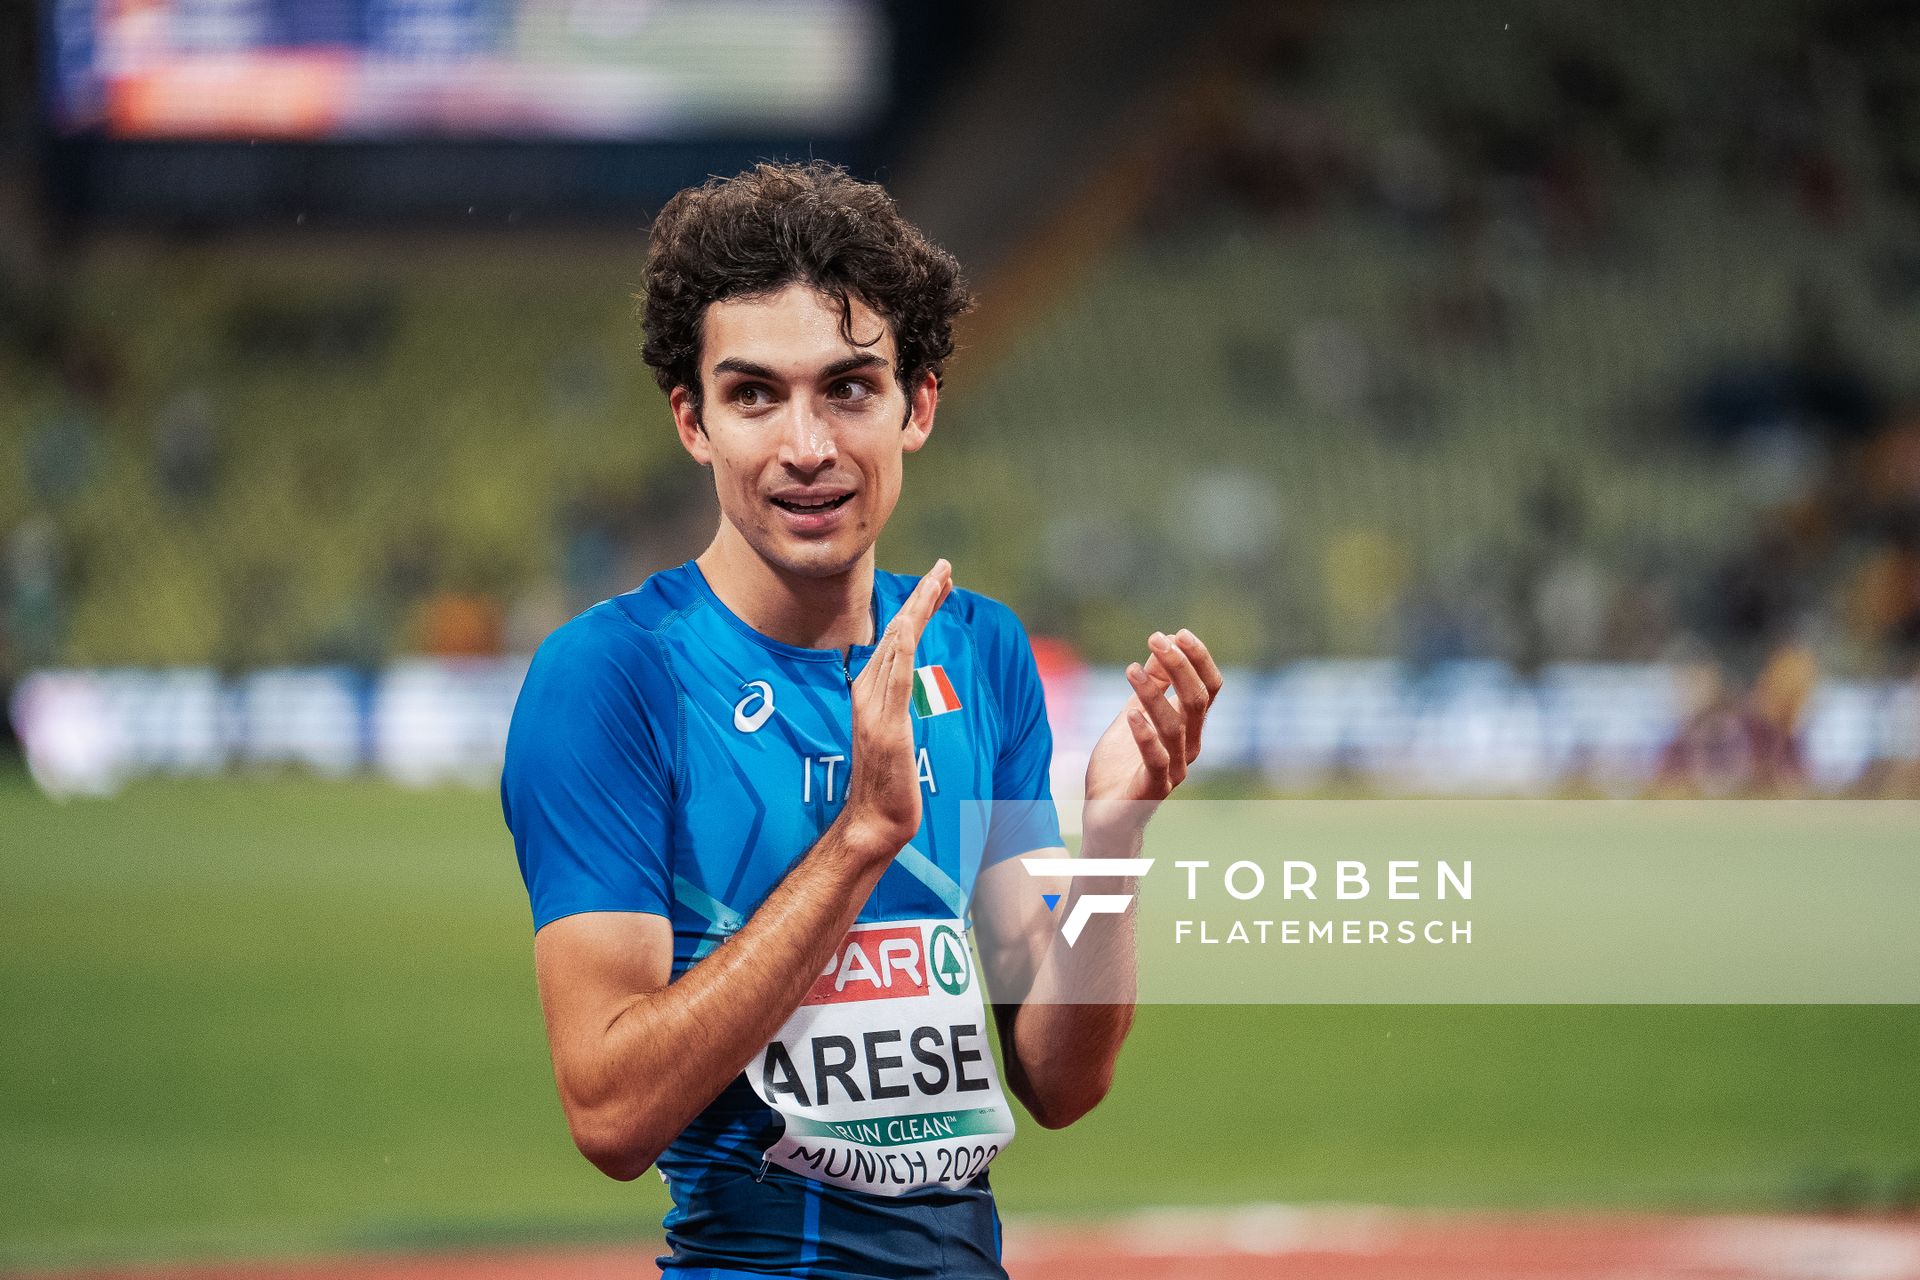 Pietro Arese (ITA) am 18.08.2022 bei den Leichtathletik-Europameisterschaften in Muenchen